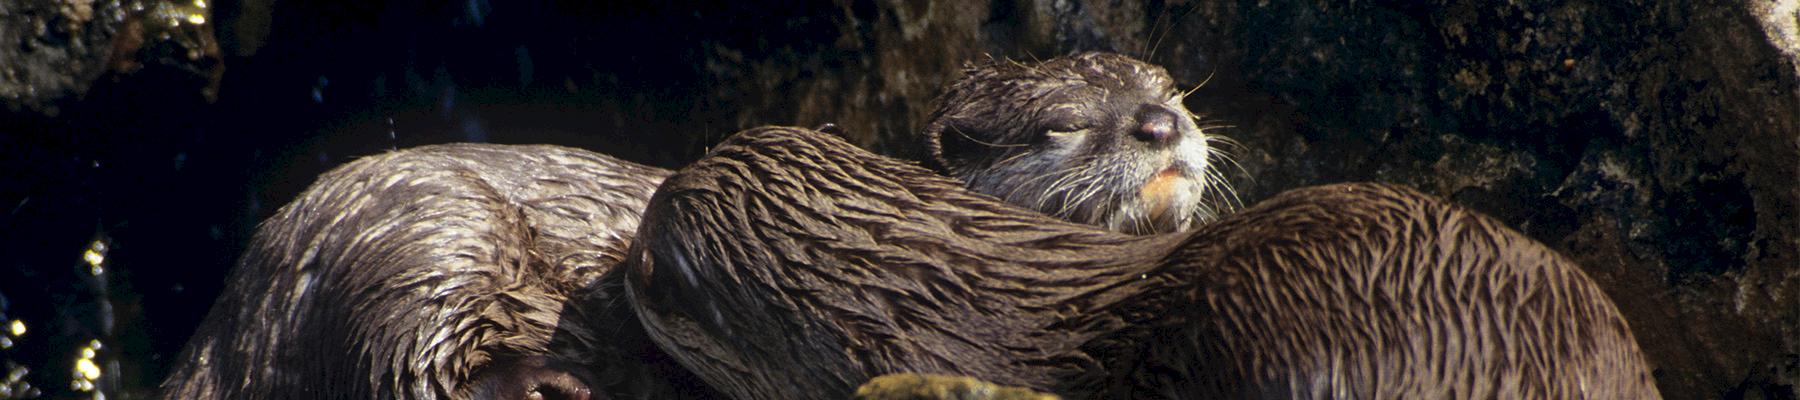 Asian Small-clawed Otter. Photo: David Lawson / WWF-UK